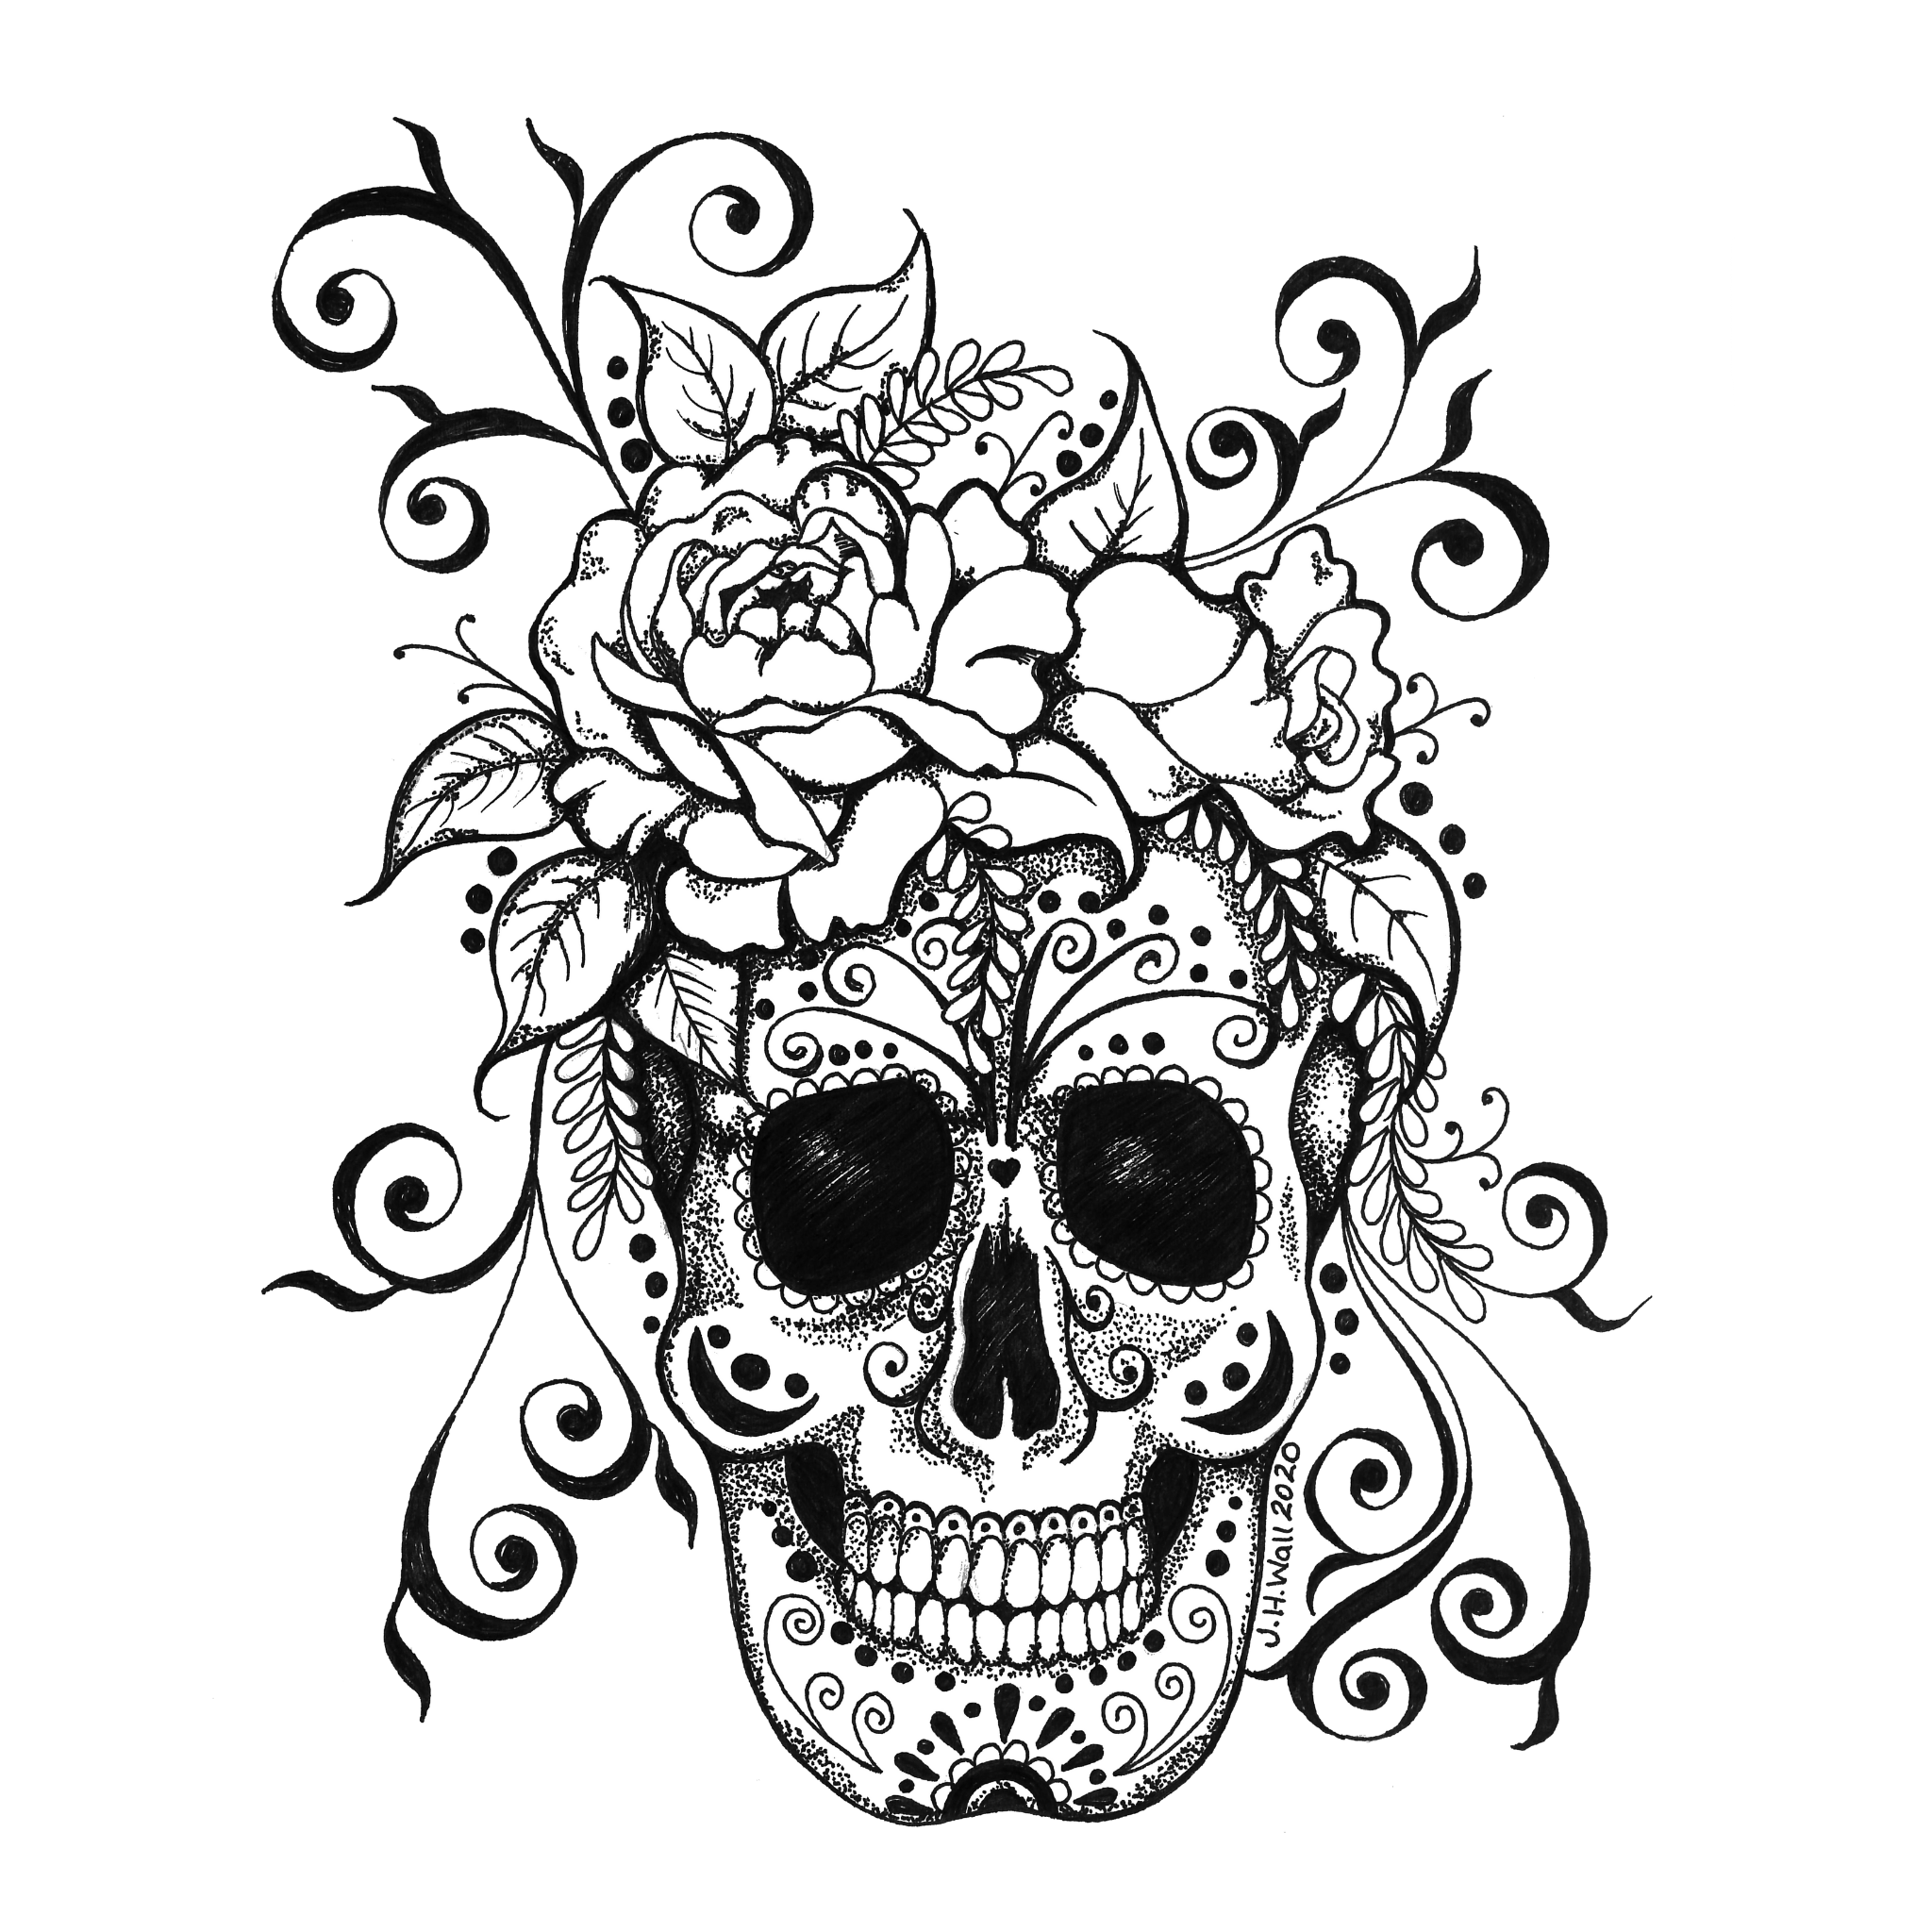 Floral Skulls